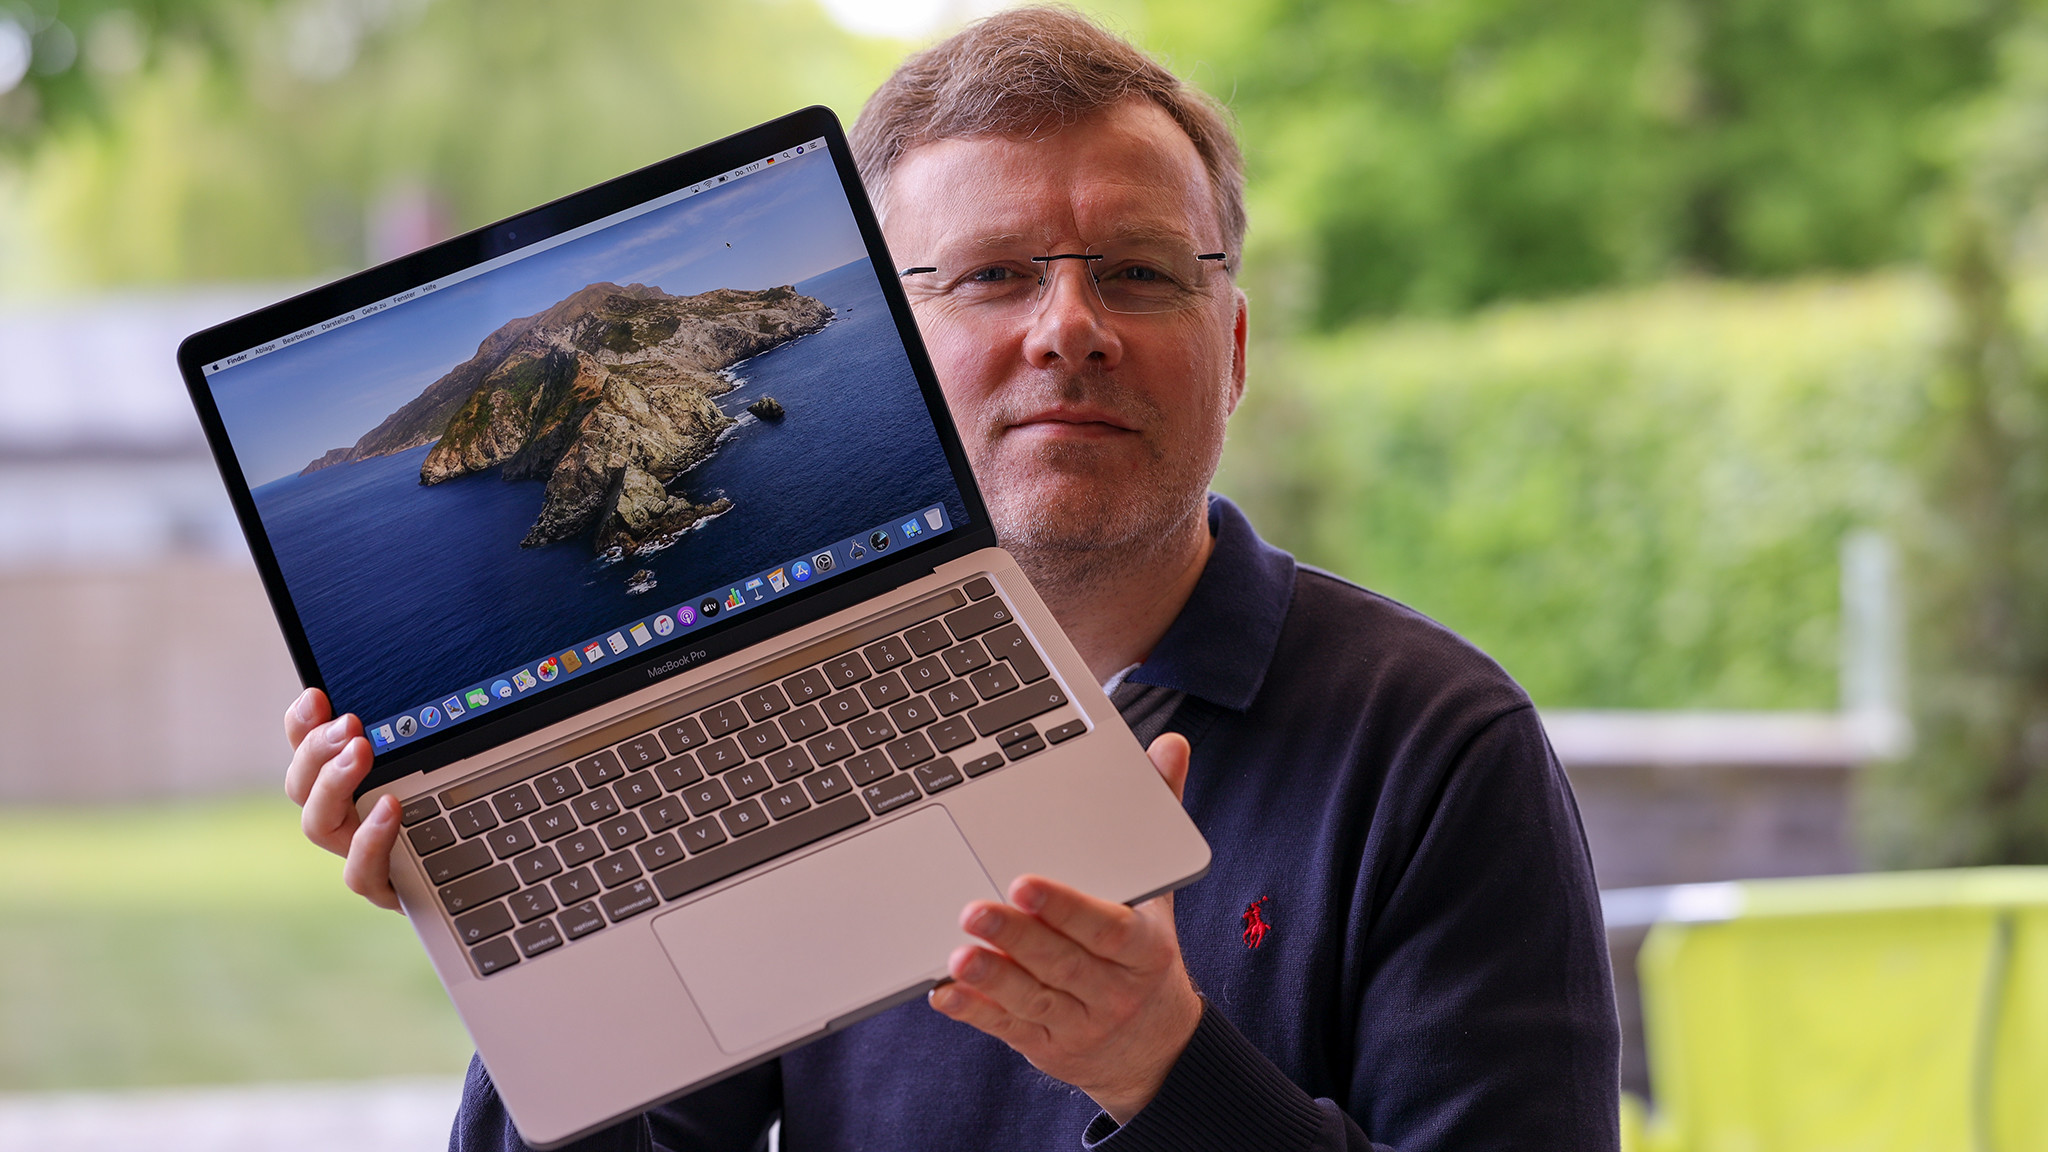 Apple Macbook Pro 13 Zoll Im Test Mehr Power Computer Bild